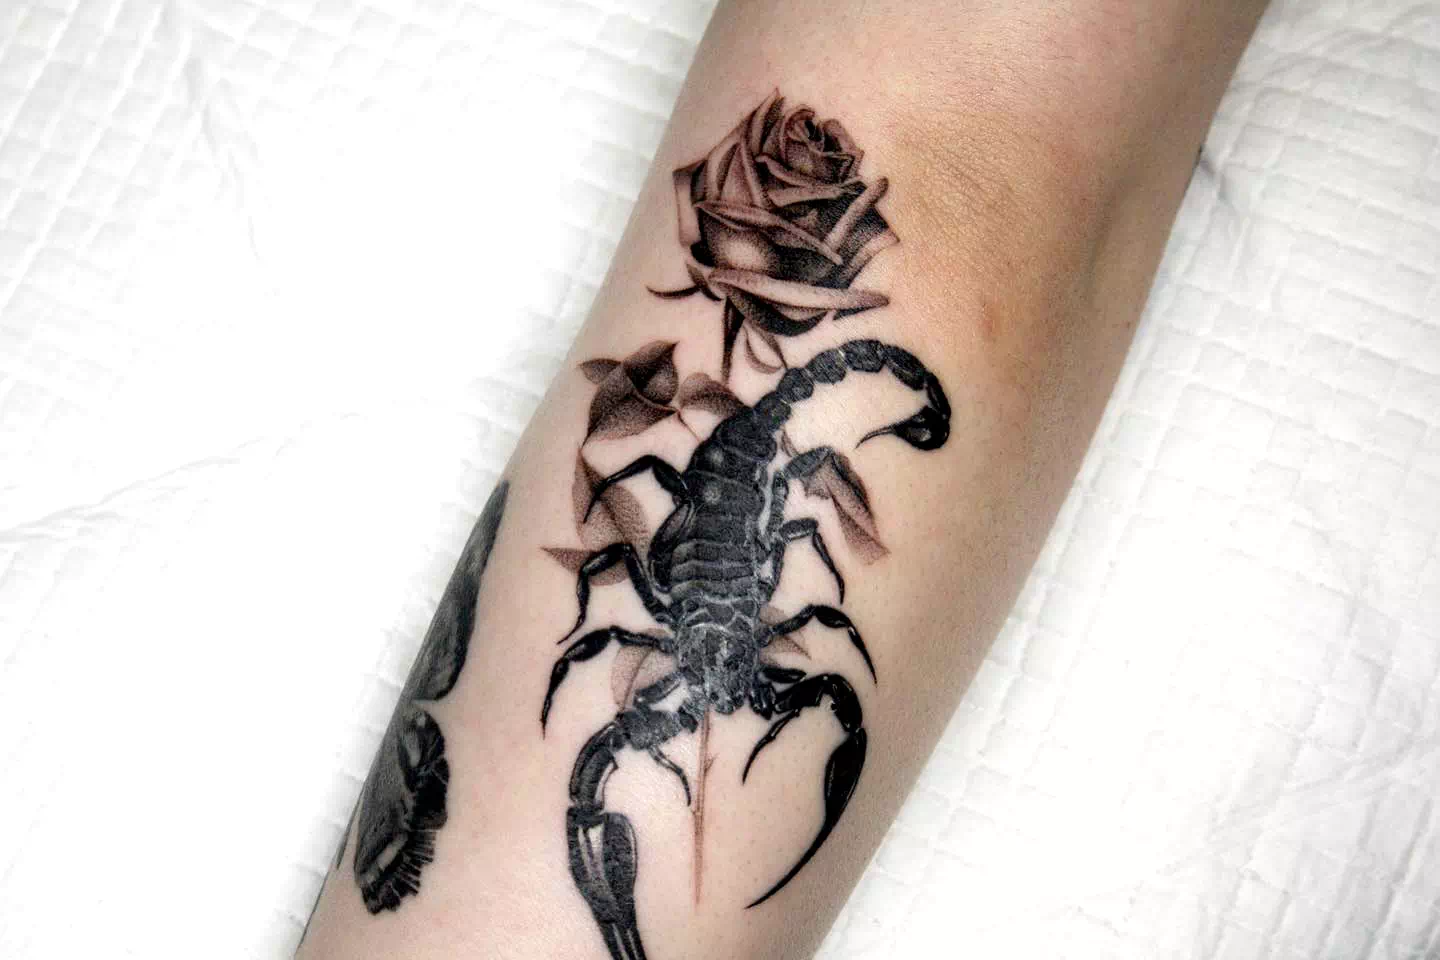 Tatuajes femeninos de Escorpio con estampado de rosas 1